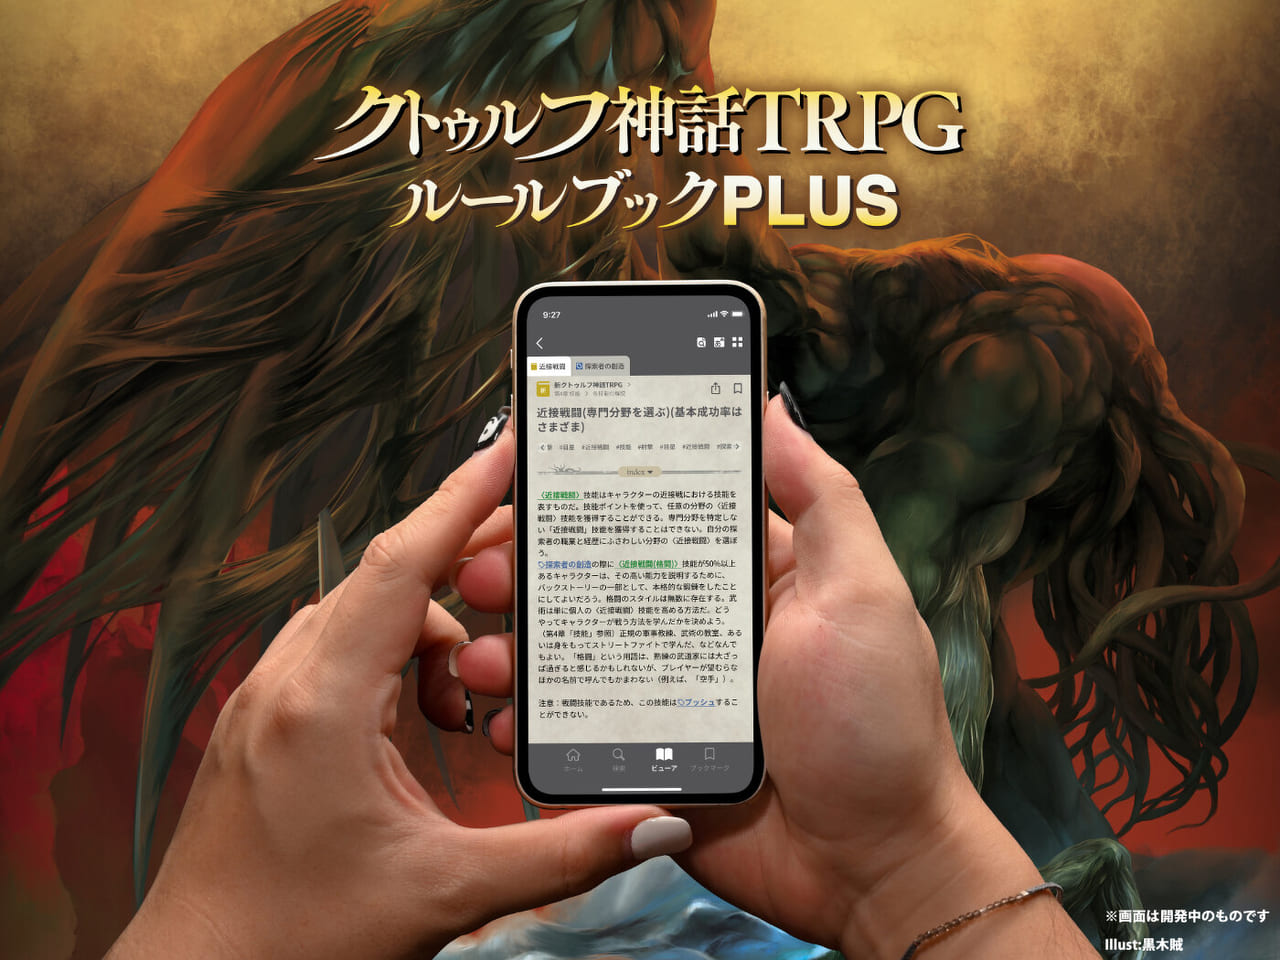 「クトゥルフ神話TRPG」ルールブックアプリが「ゲムマ2022秋」に出展決定_001